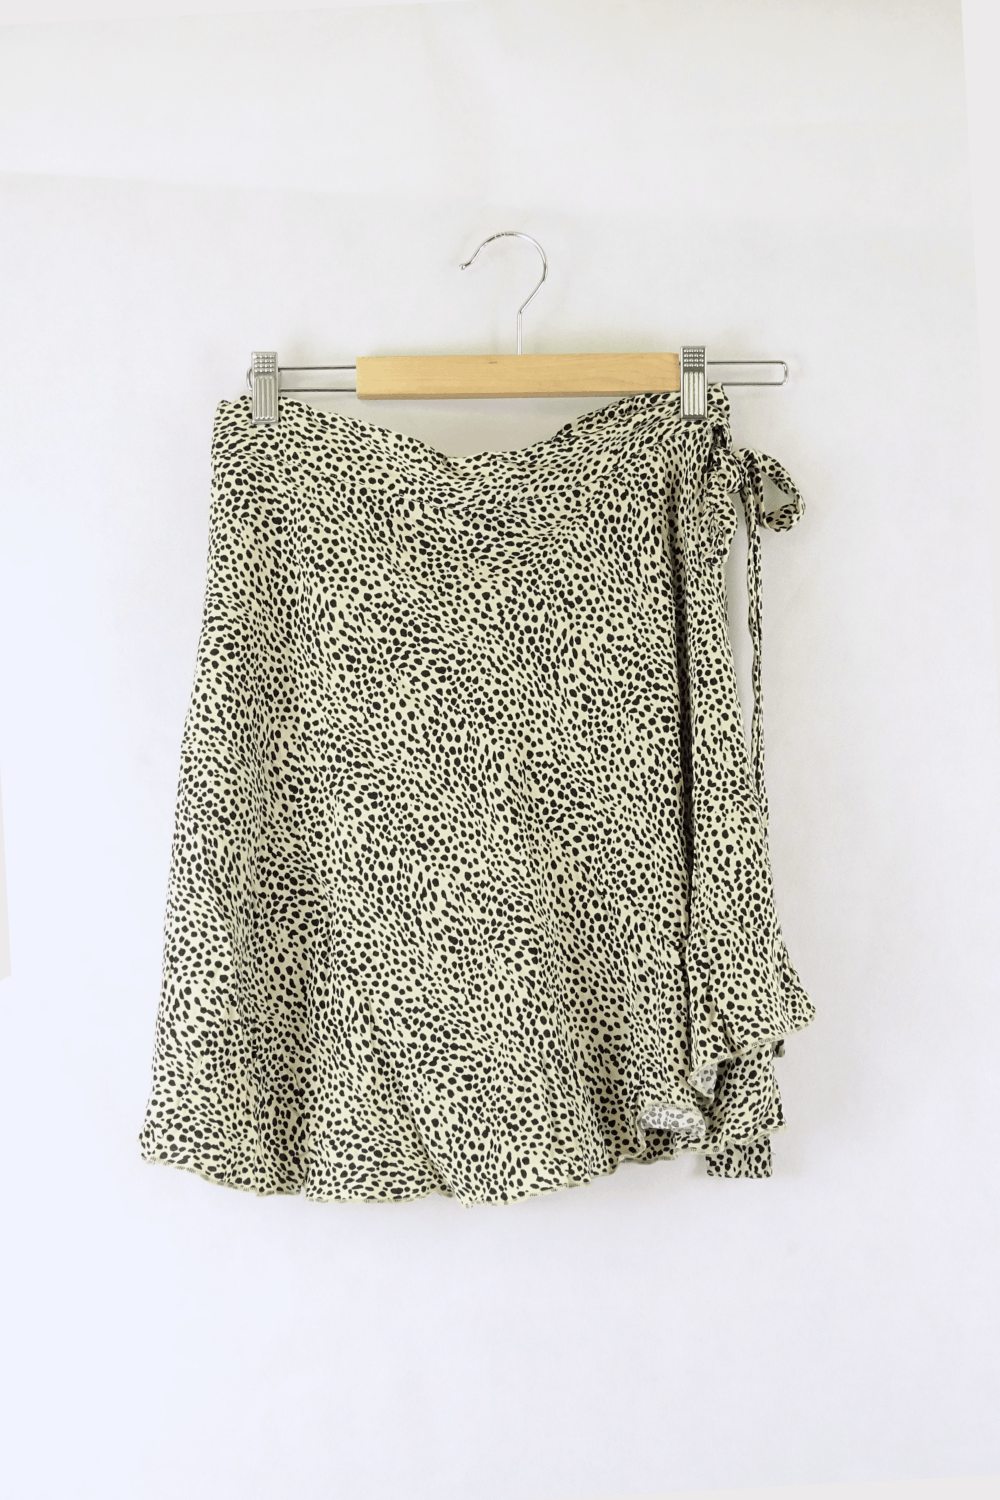 Ghanda Animal Print Skirt L